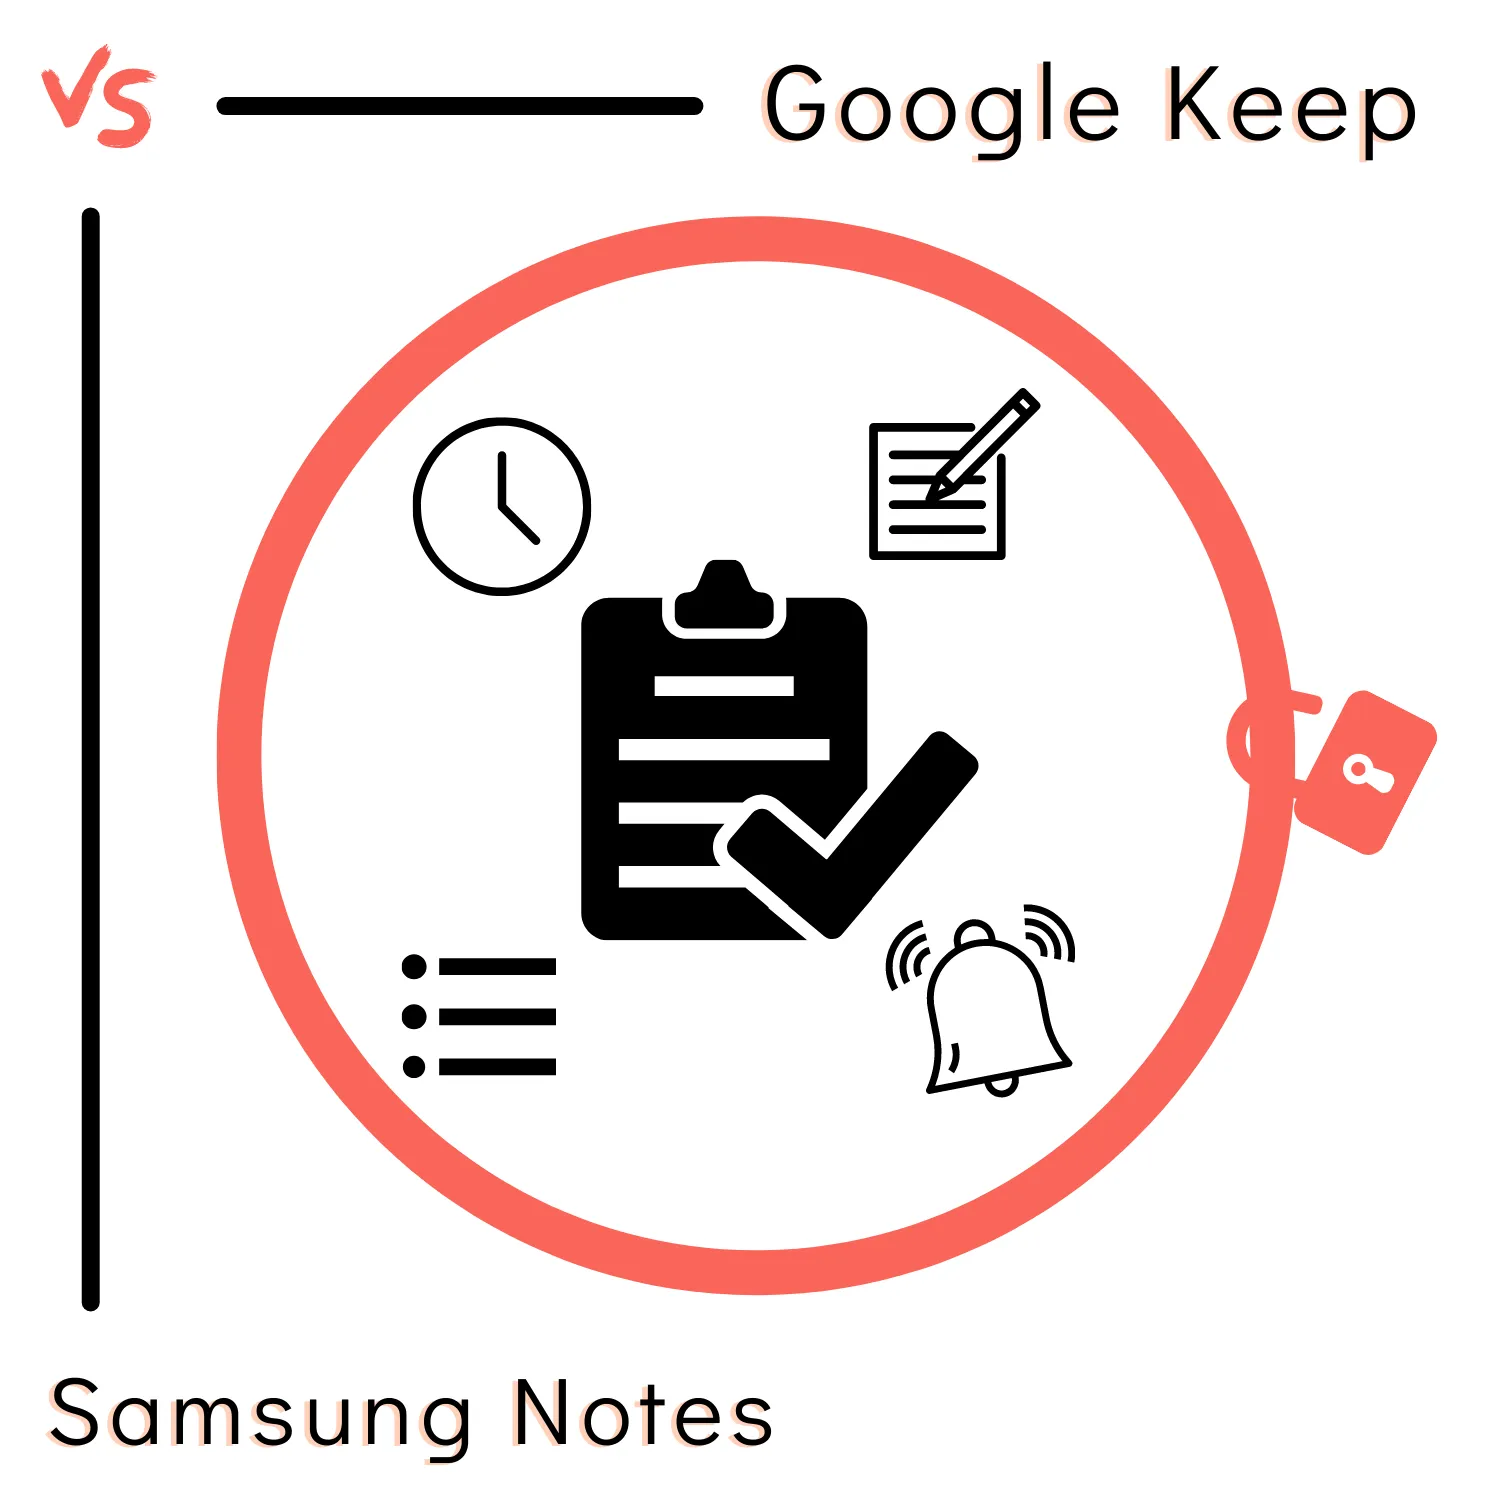 Google Keep vs Samsung Notes